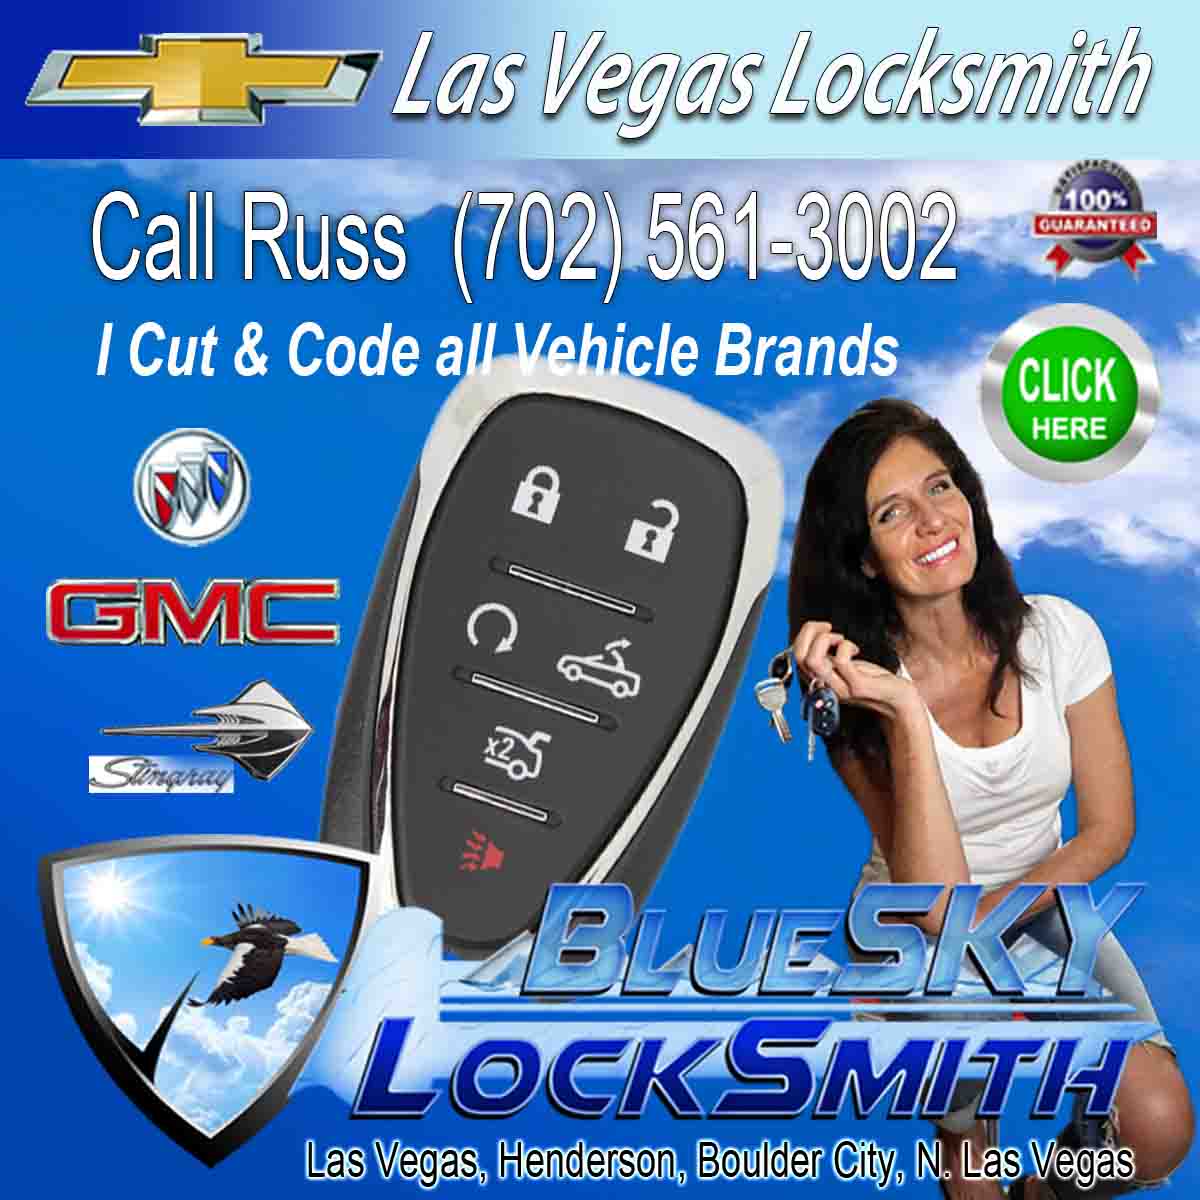 Locksmith Chevrolet Locksmith